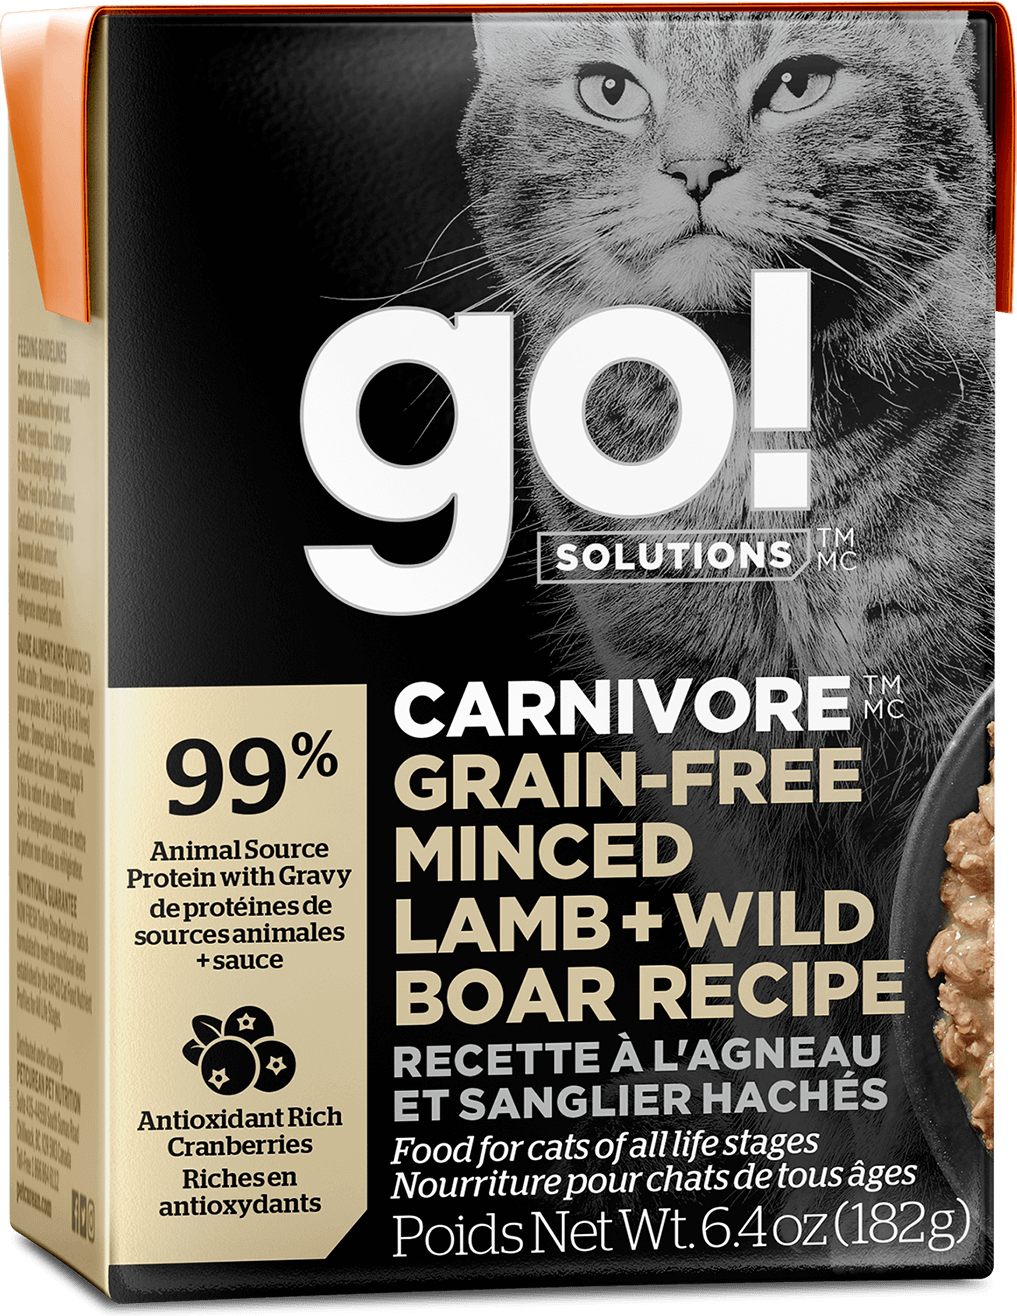 GO! Solutions Carnivore Grain-Free Minced Lamb + Wild Boar Recipe